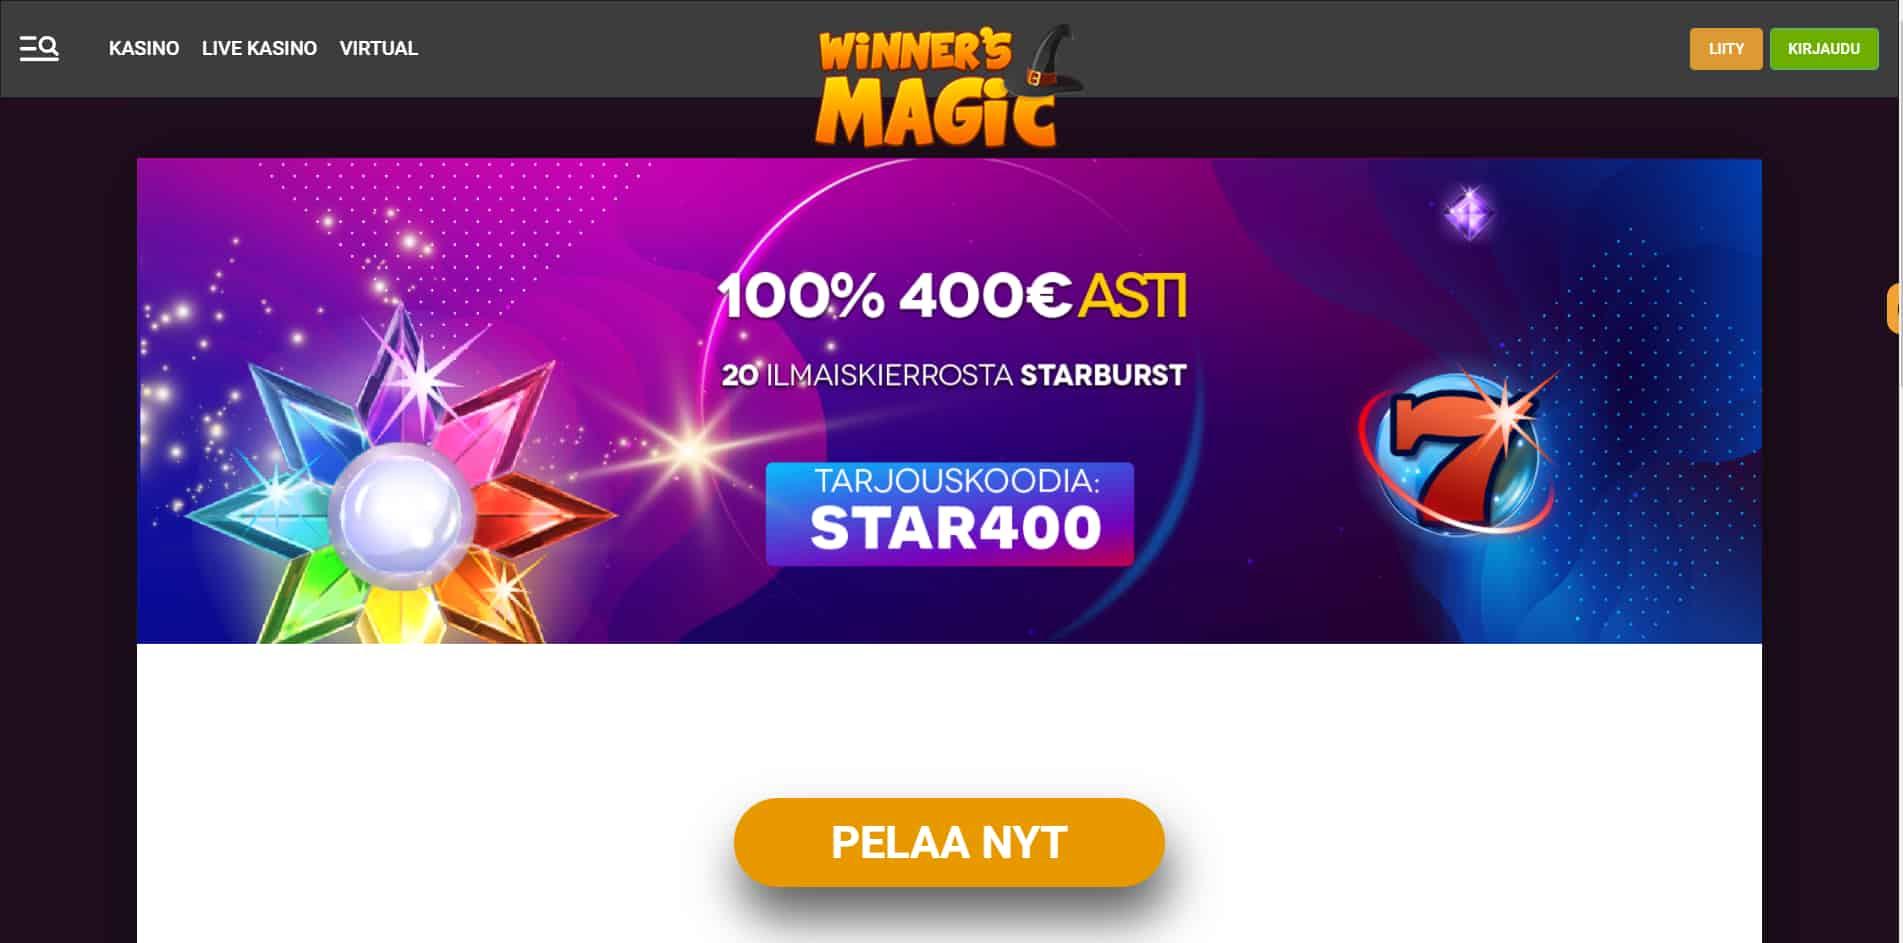 Winners Magic casino homepage